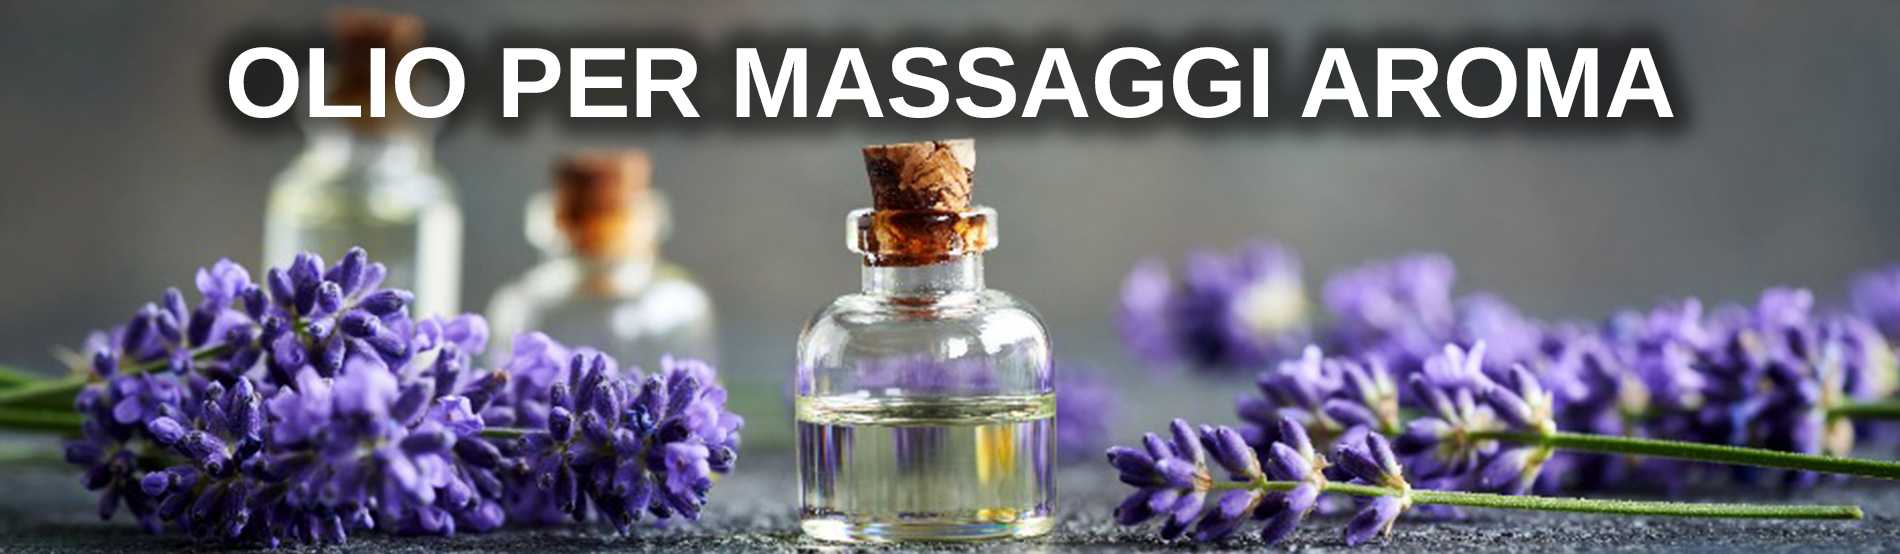 Olio per massaggio aromatici